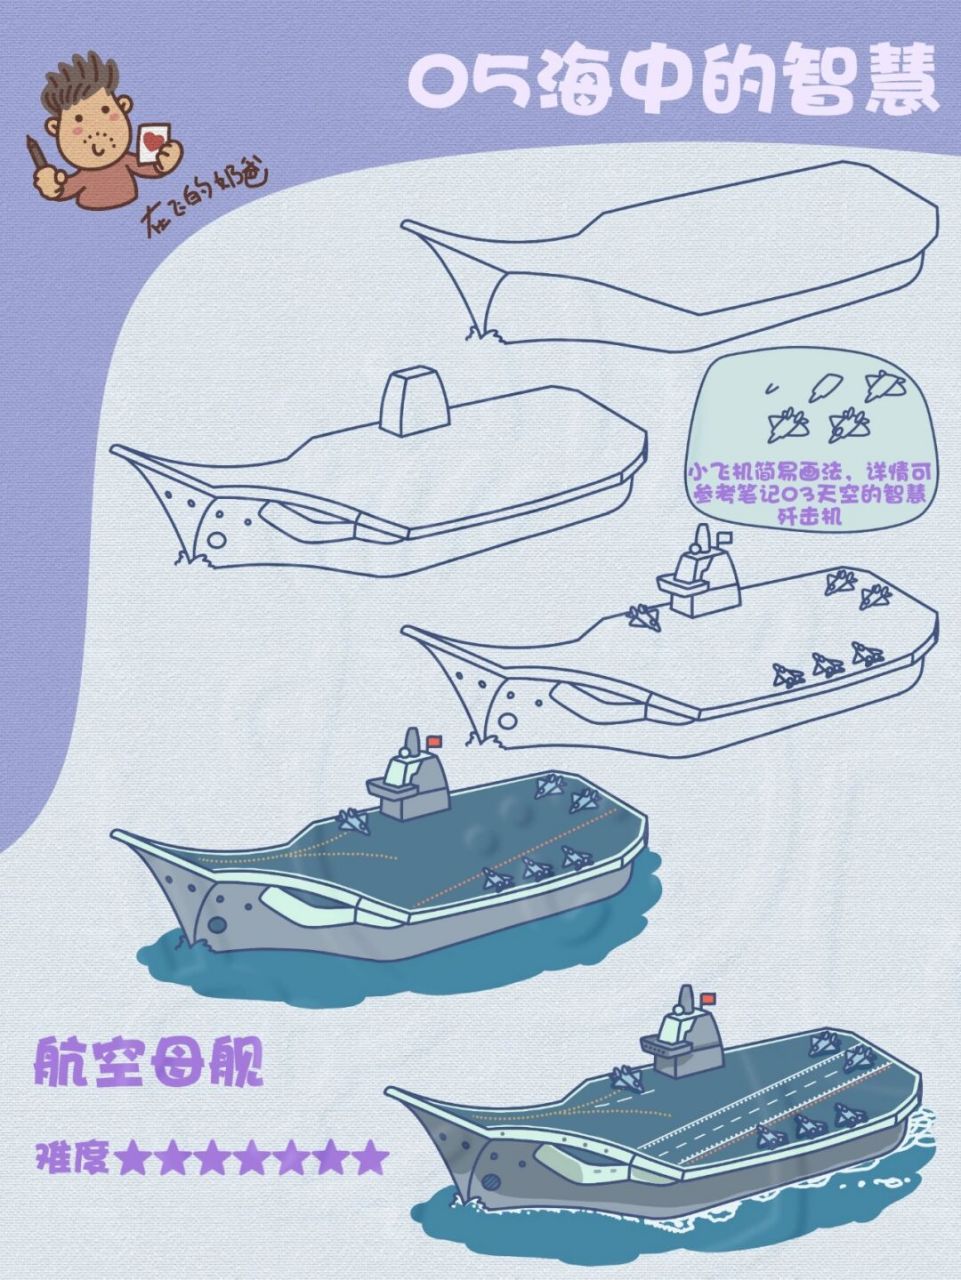 中国航母辽宁舰简笔画图片